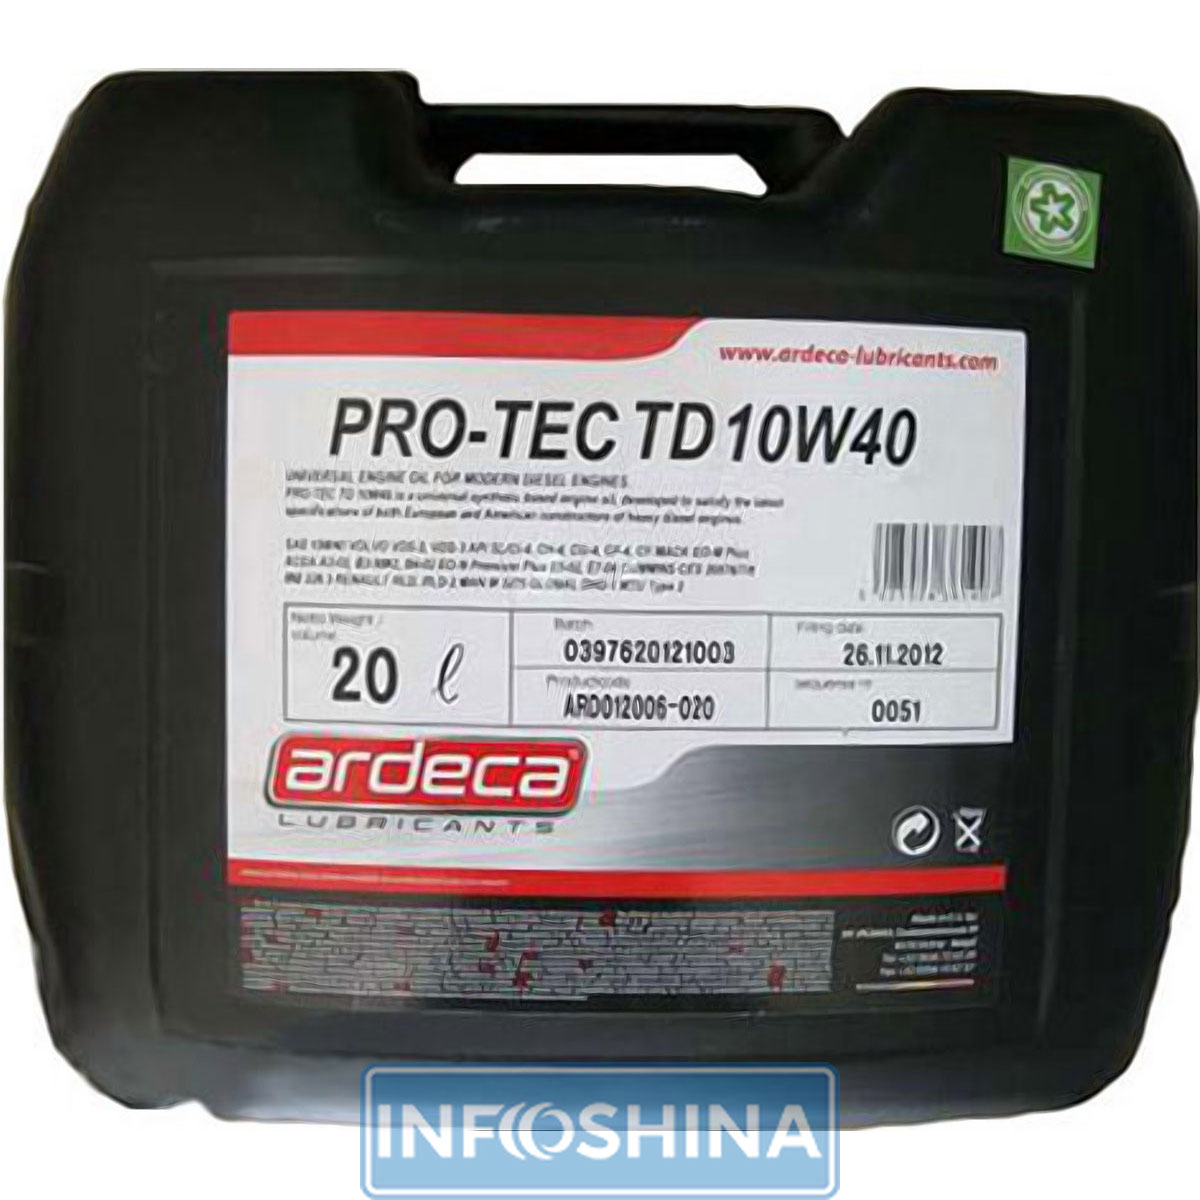 Ardeca Pro-Tec TD 10W-40